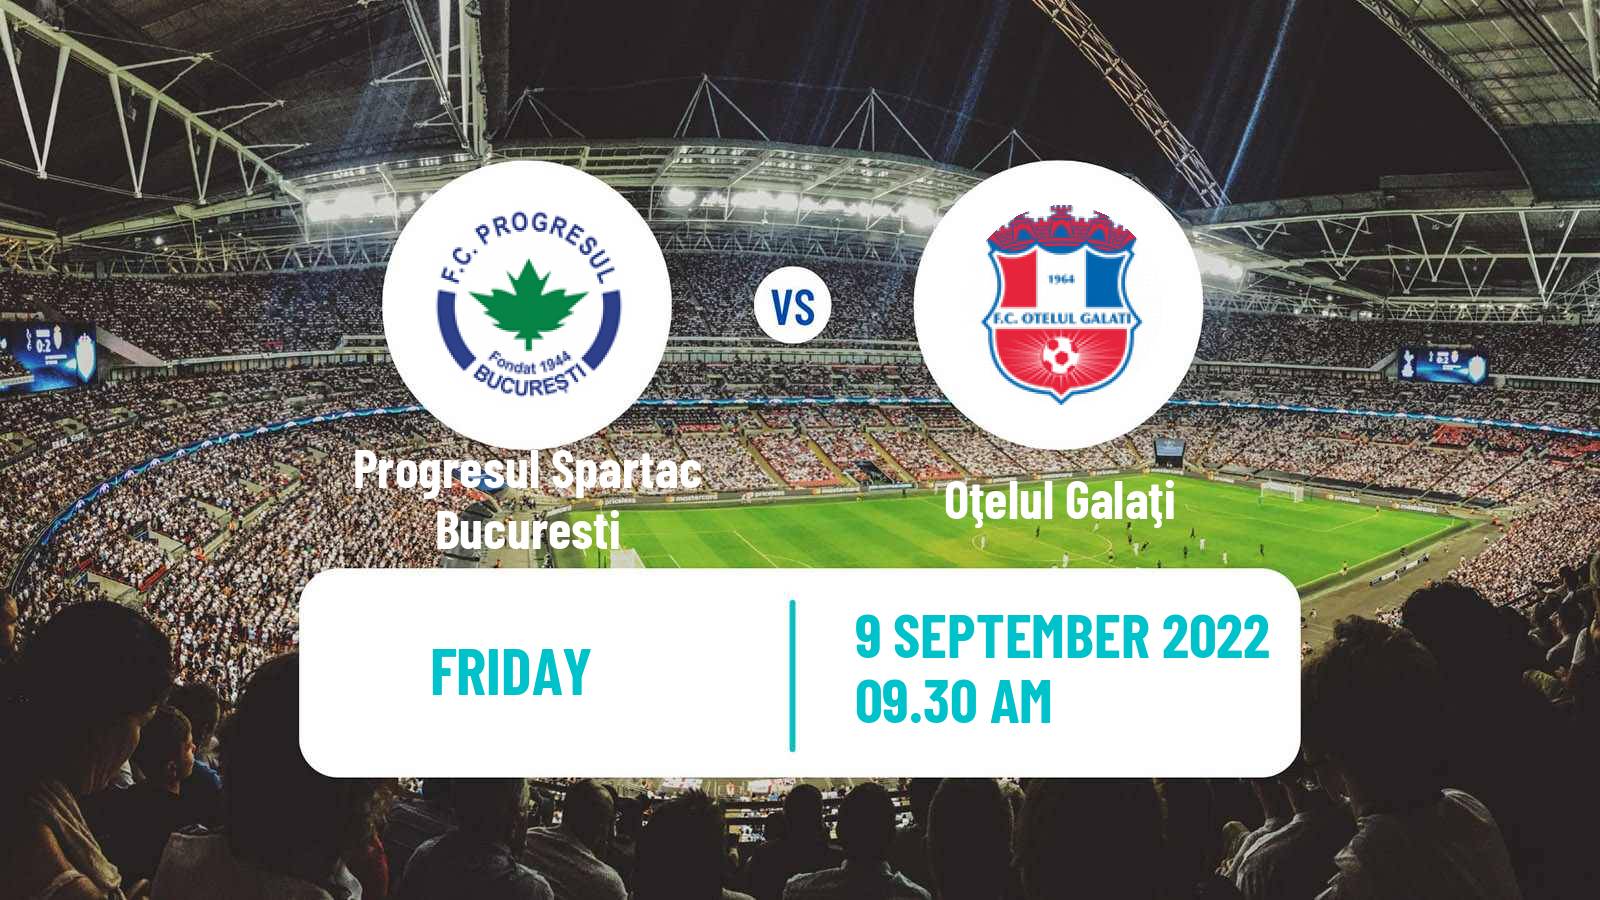 Soccer Romanian Division 2 Progresul Spartac Bucuresti - Oţelul Galaţi